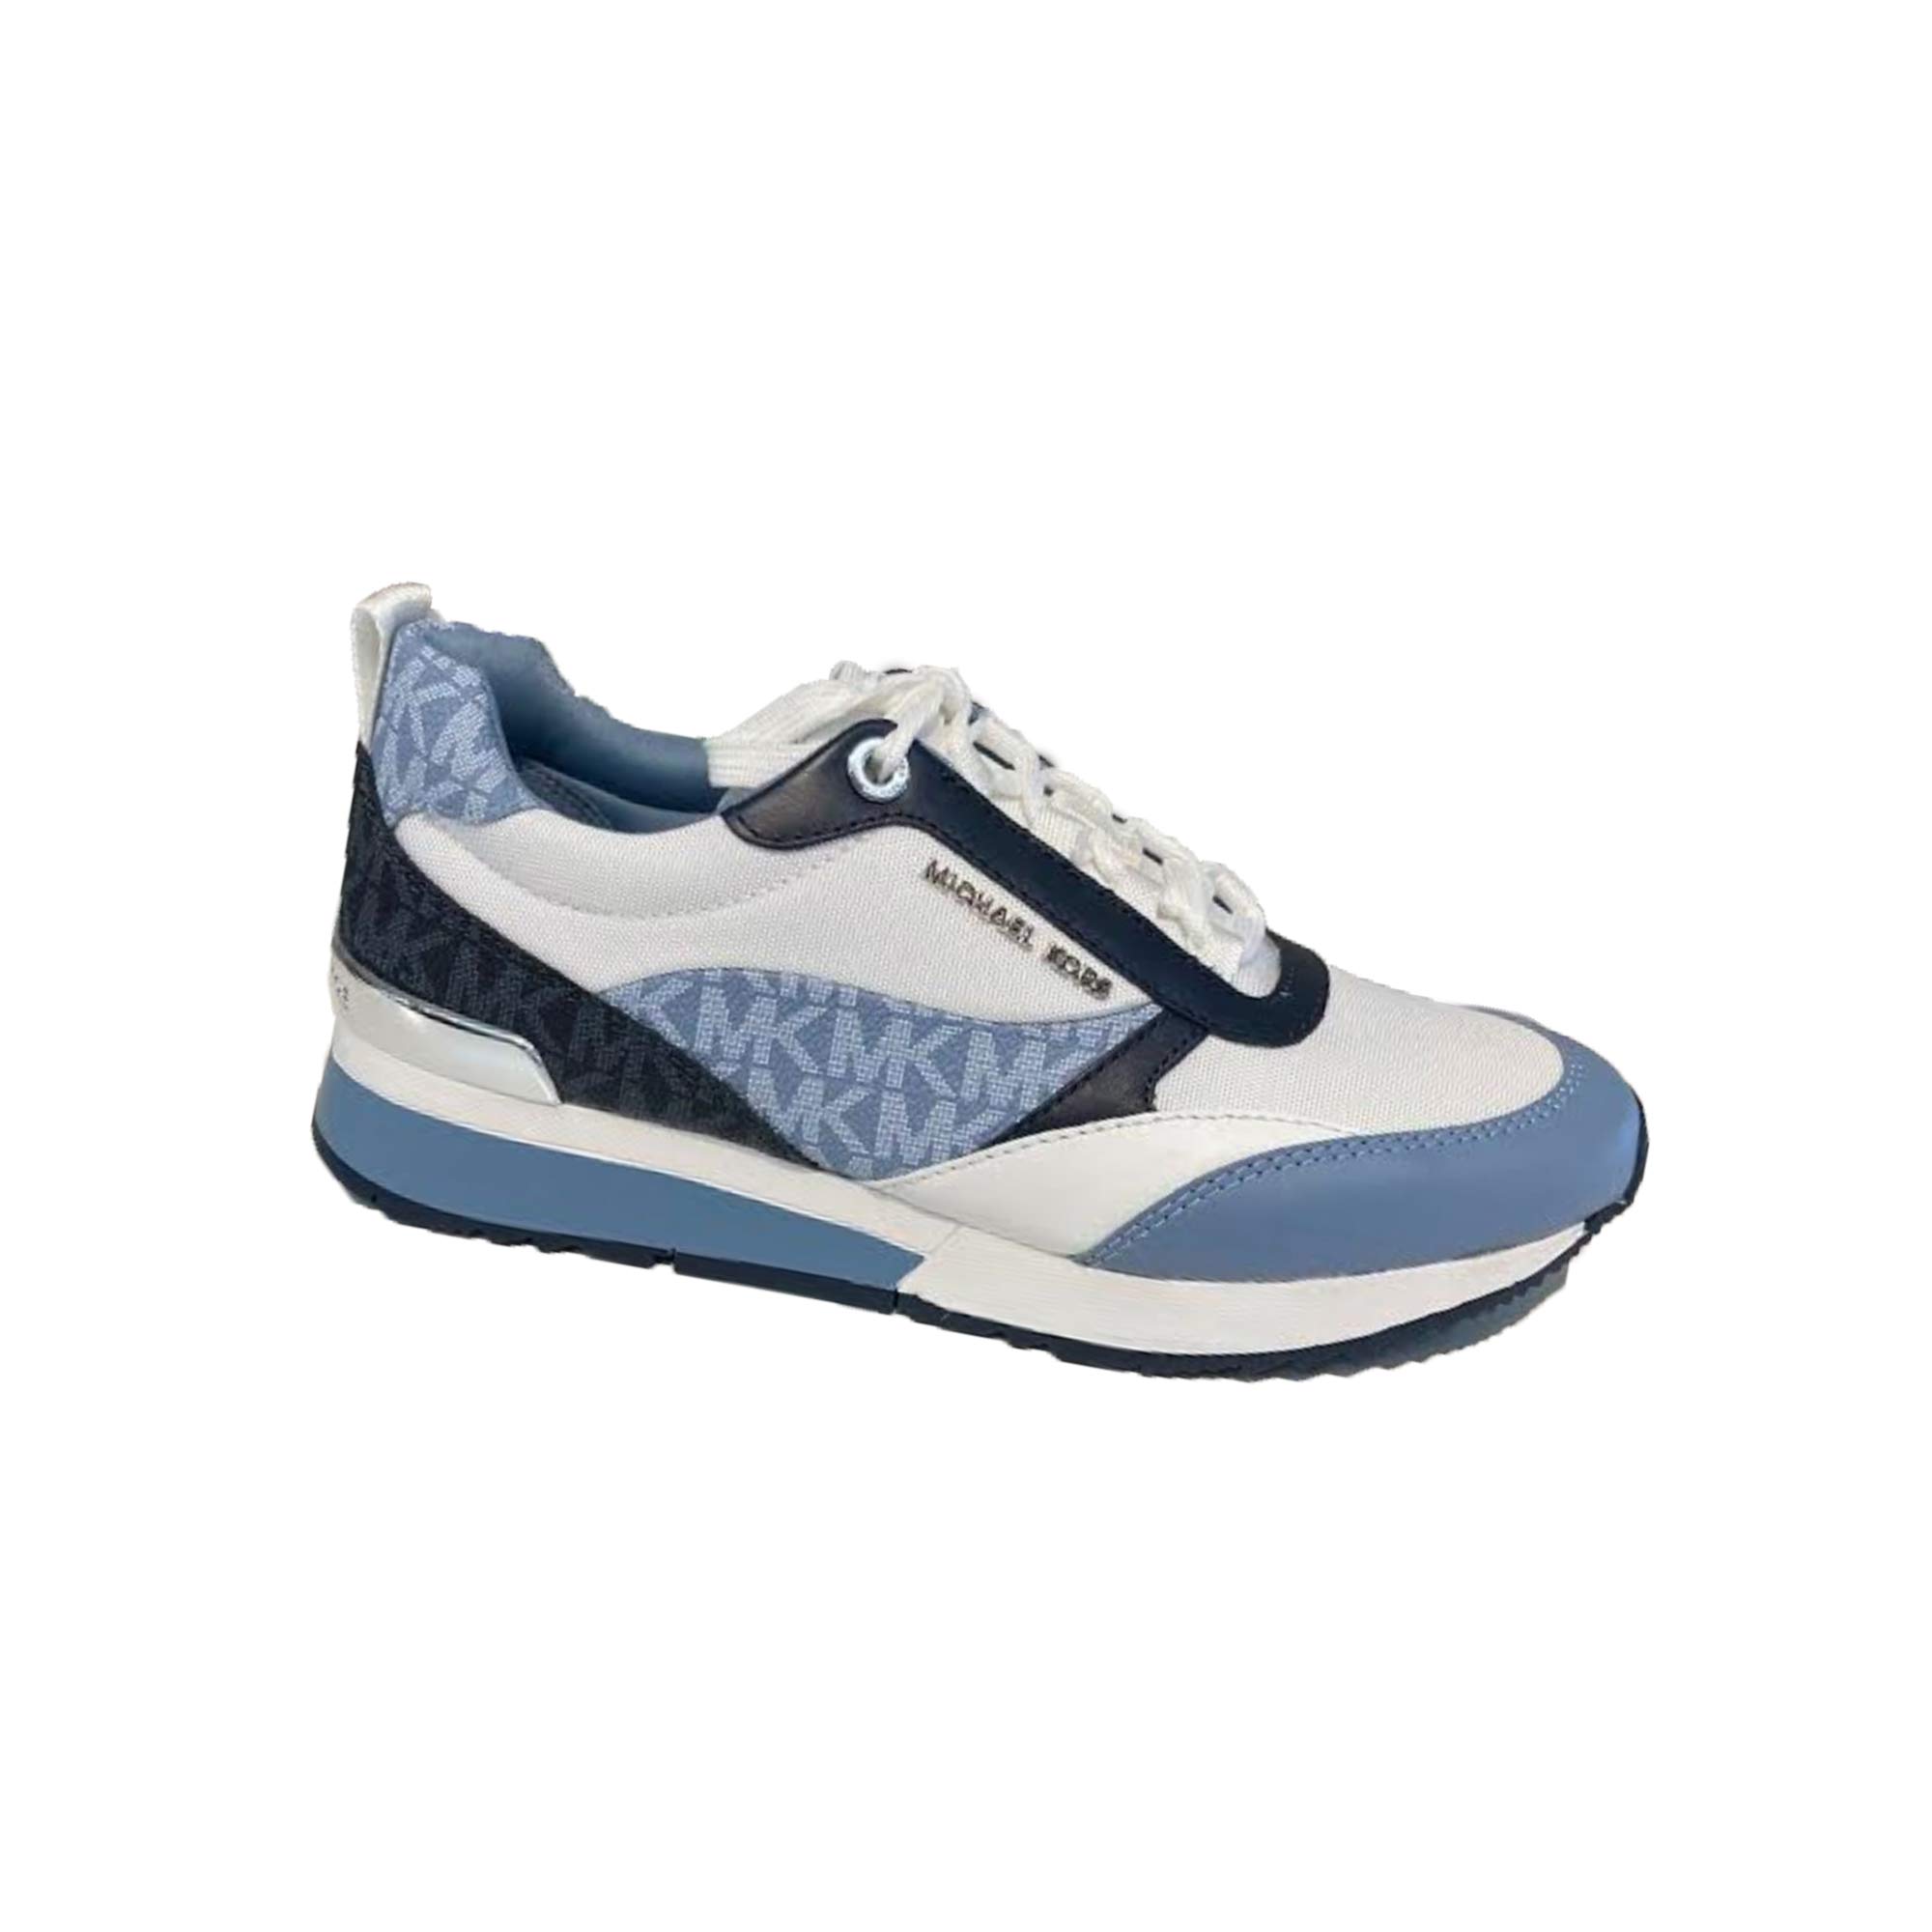 MICHAEL Michael Kors Allie Stride Trainer Shoes for Women - Navy / Chambre  - Chaussures Bari à Saint-Léonard